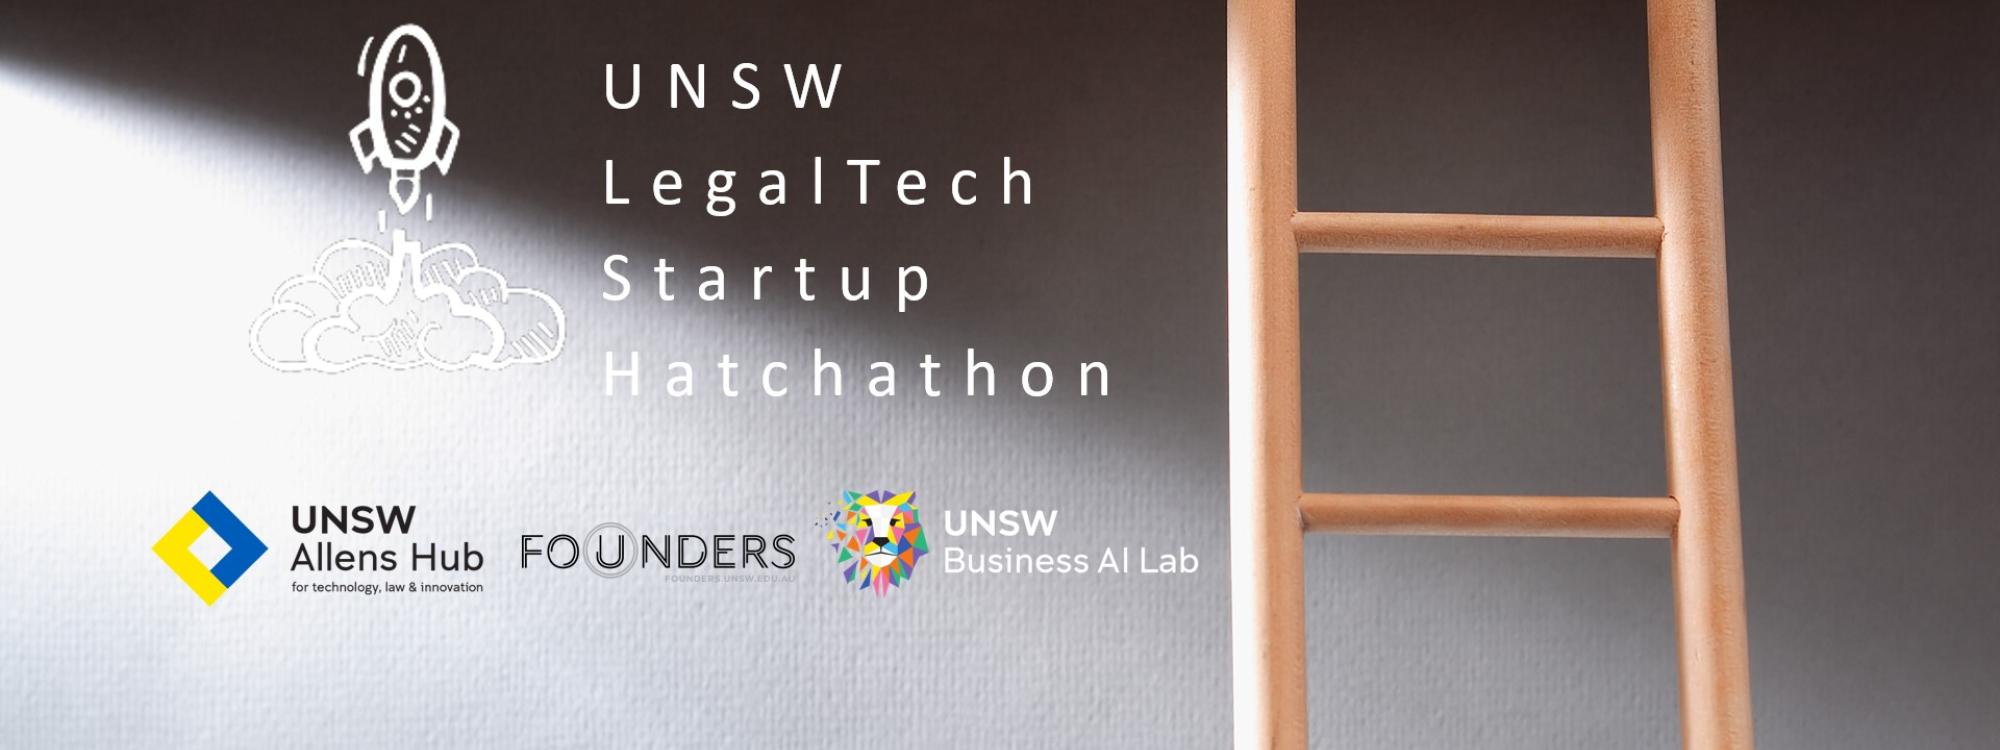 UNSW LegalTech​ Startup​ Hatchathon flyer